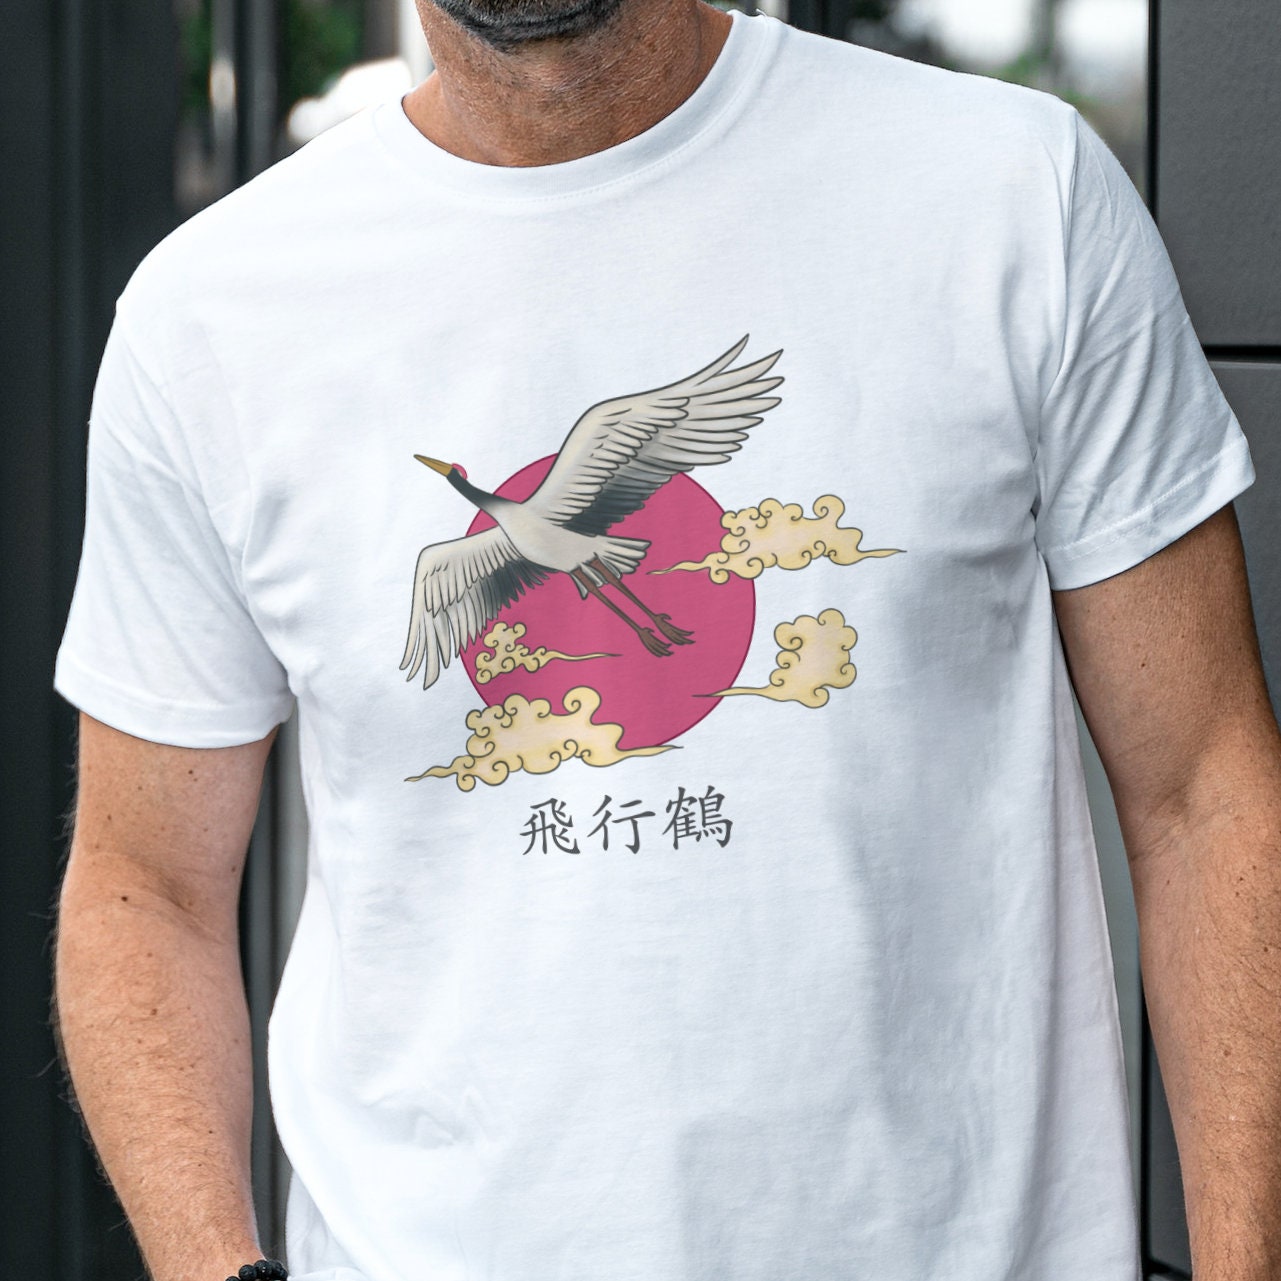 Japanese print shirt